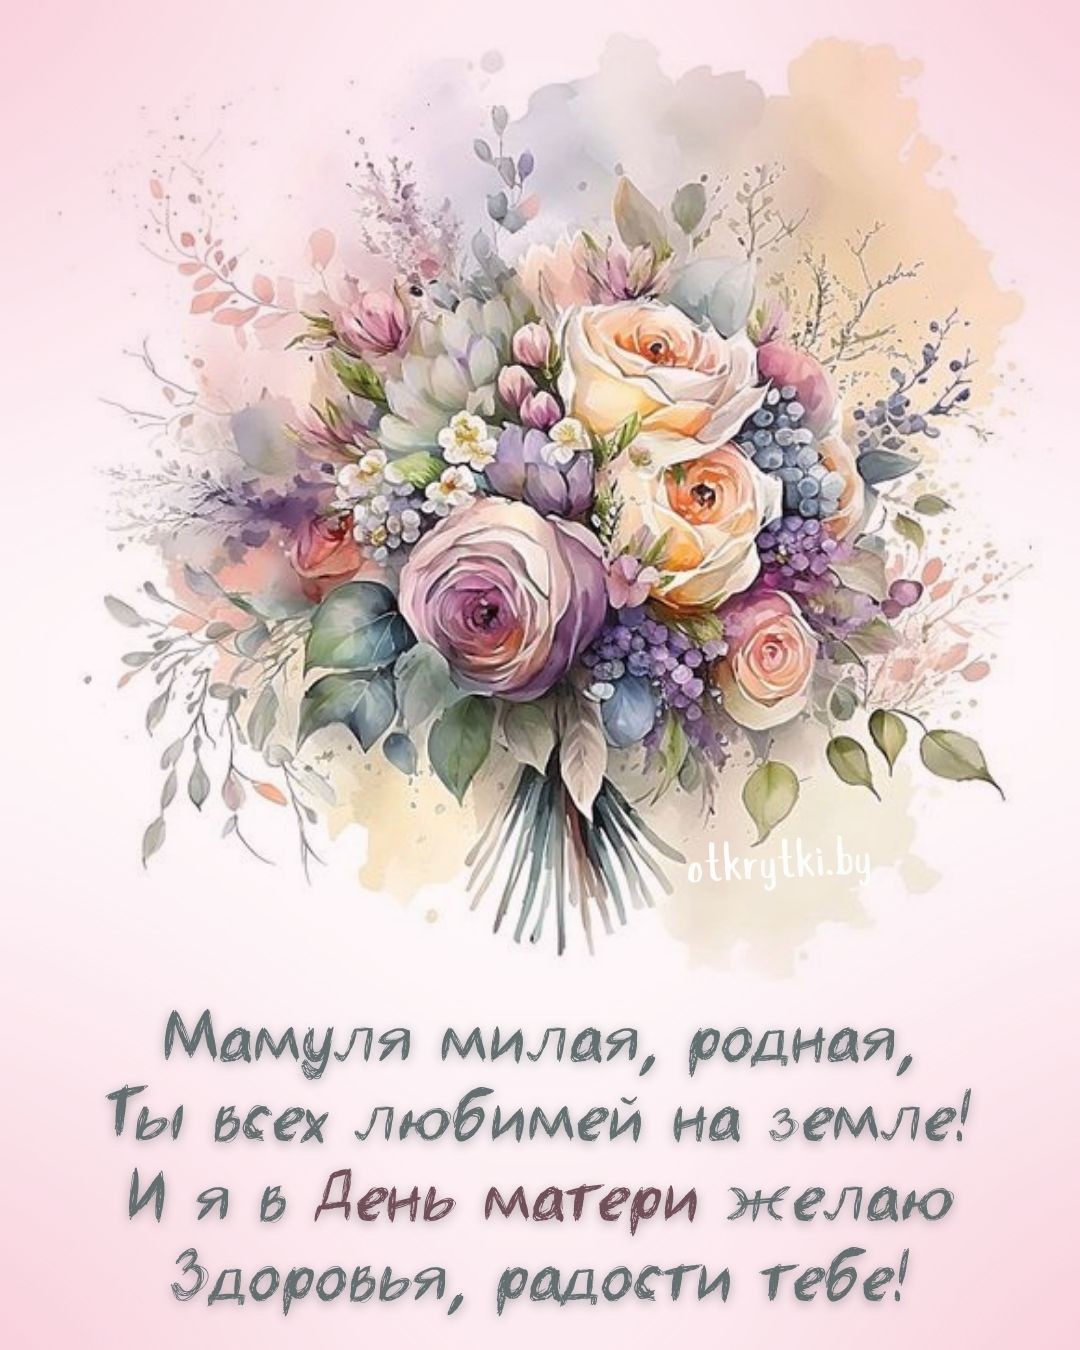 Открытка с Днем матери с прекрасными цветами и поздравлением